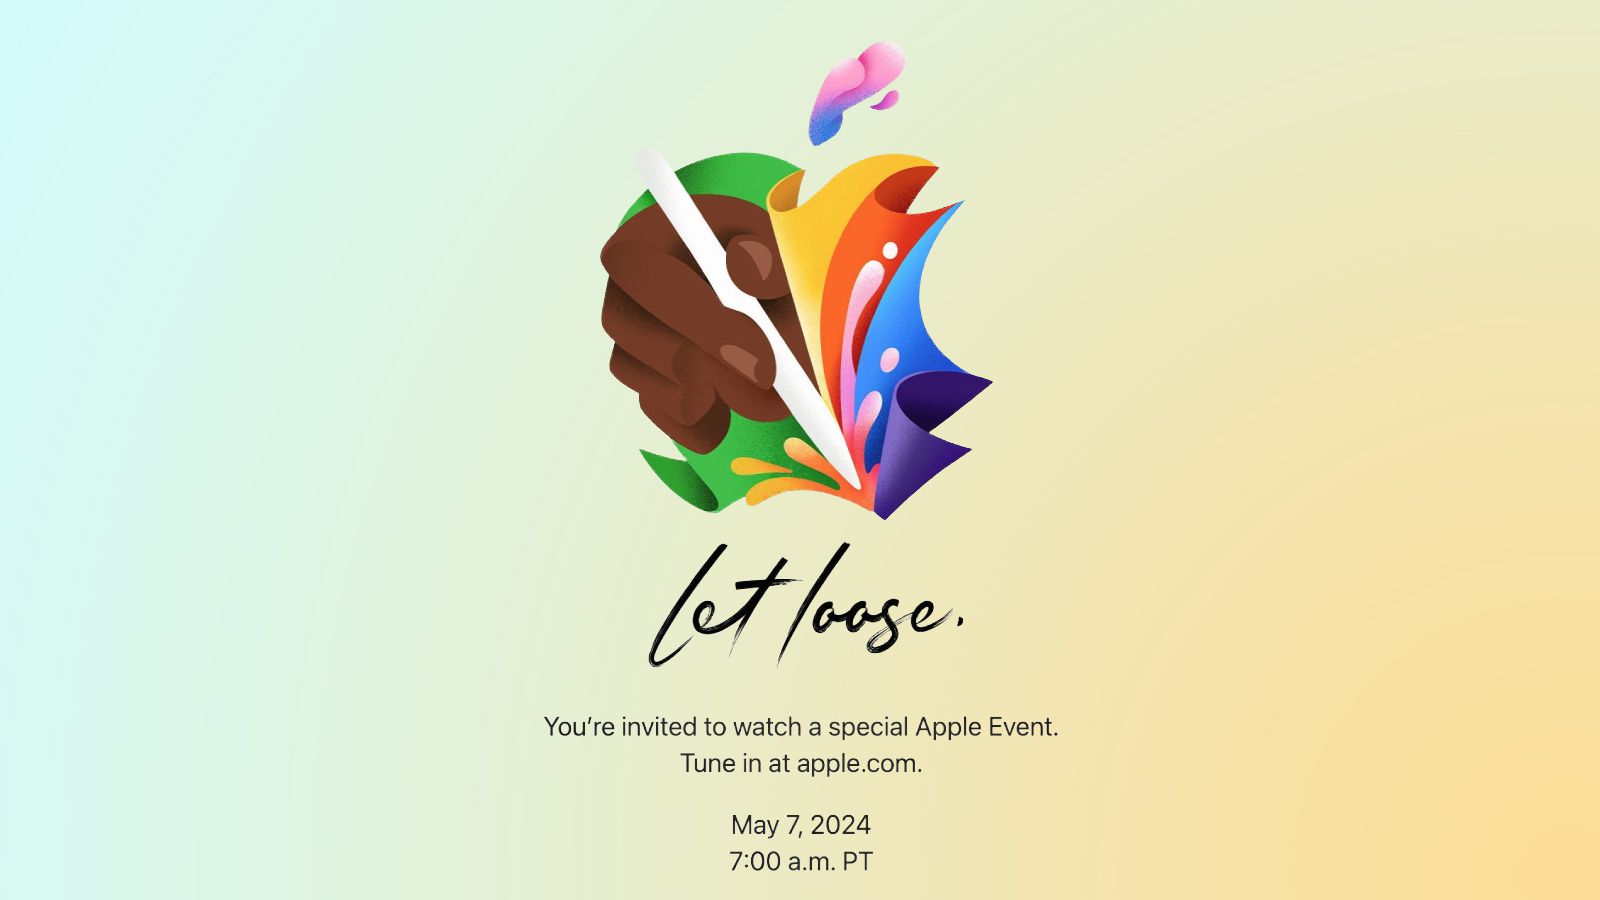 Apple kondigt het 'Let Loose'evenement aan op 7 mei, te midden van